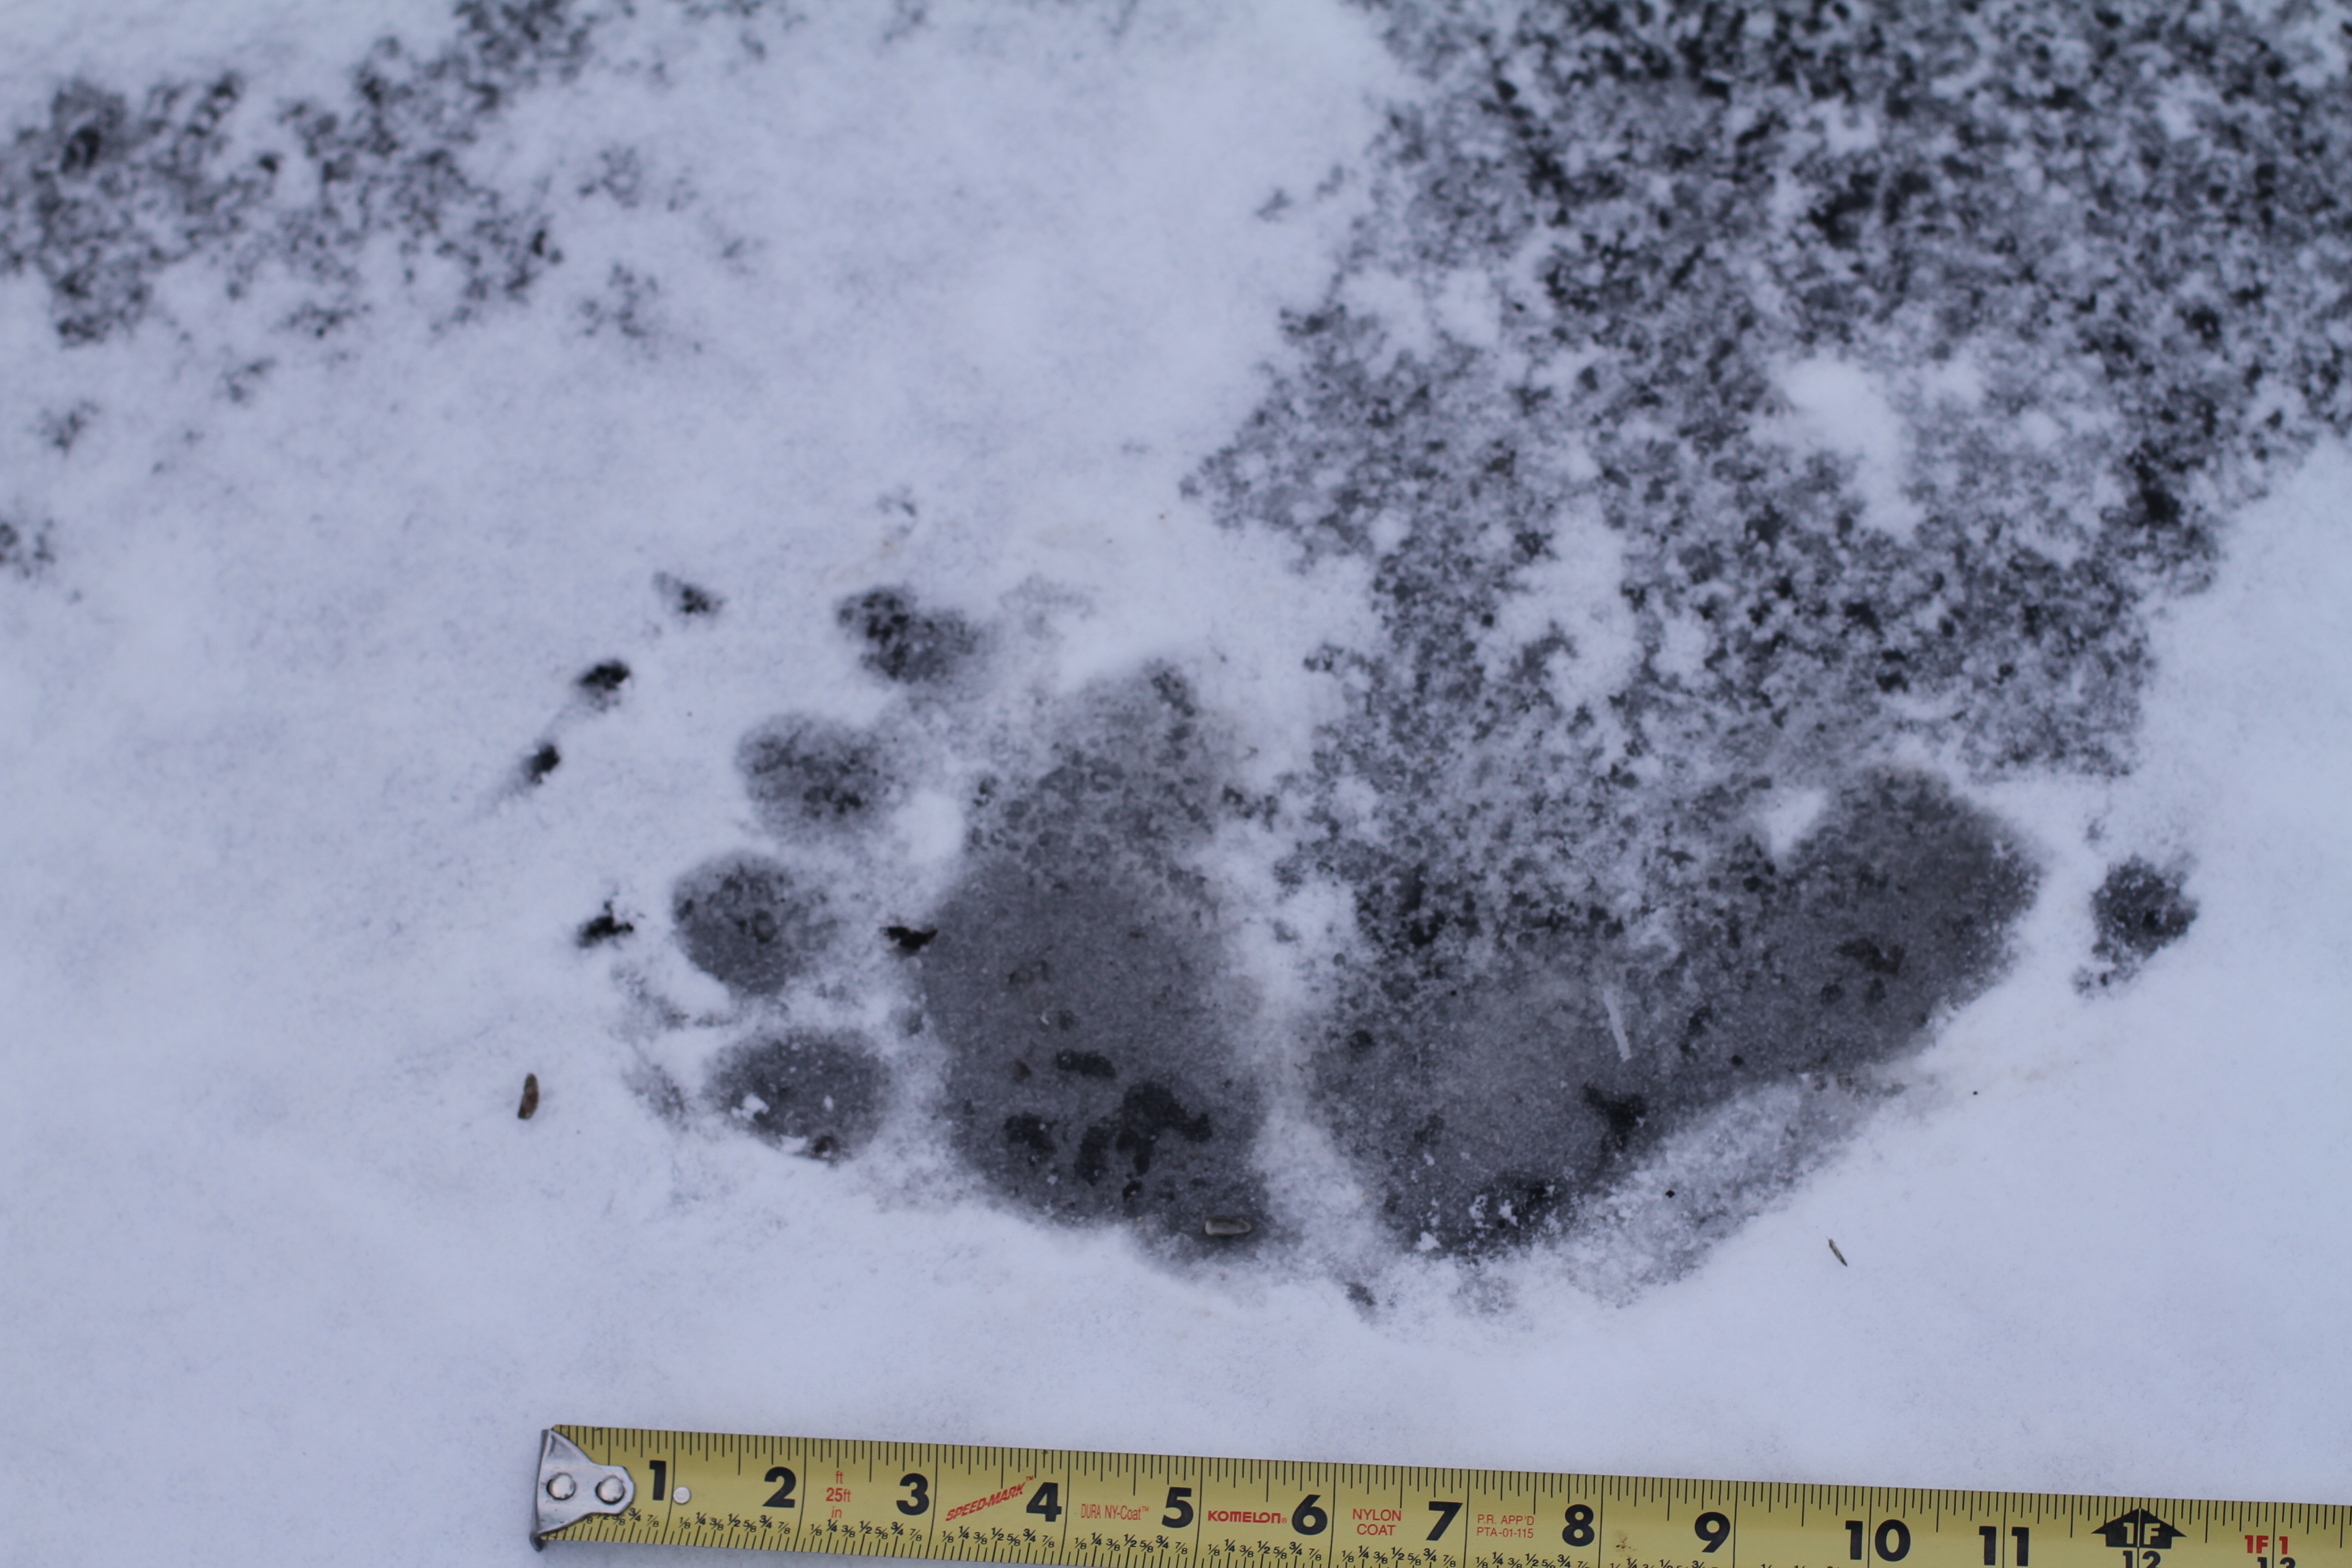 Black Bear Prints in Snow